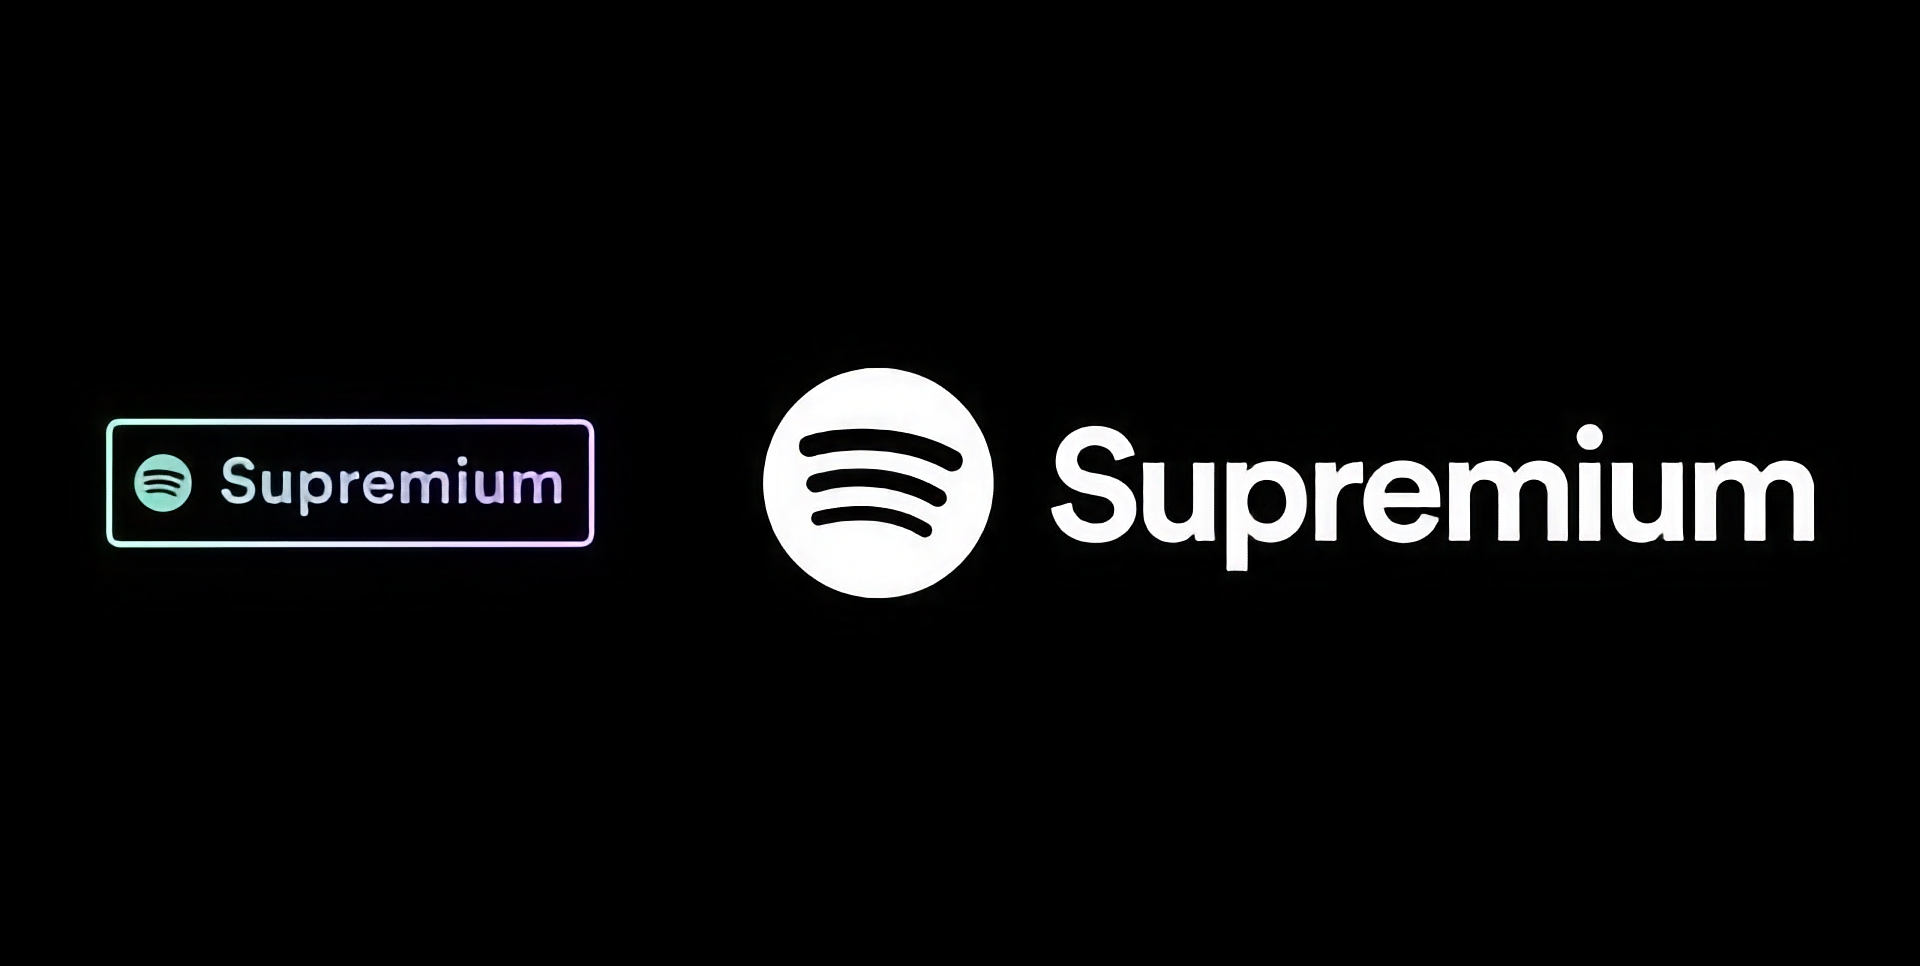 Spotify maakt zich op voor de lancering van een Supremium plan met Lossless audio-ondersteuning en een prijs van $19 per maand